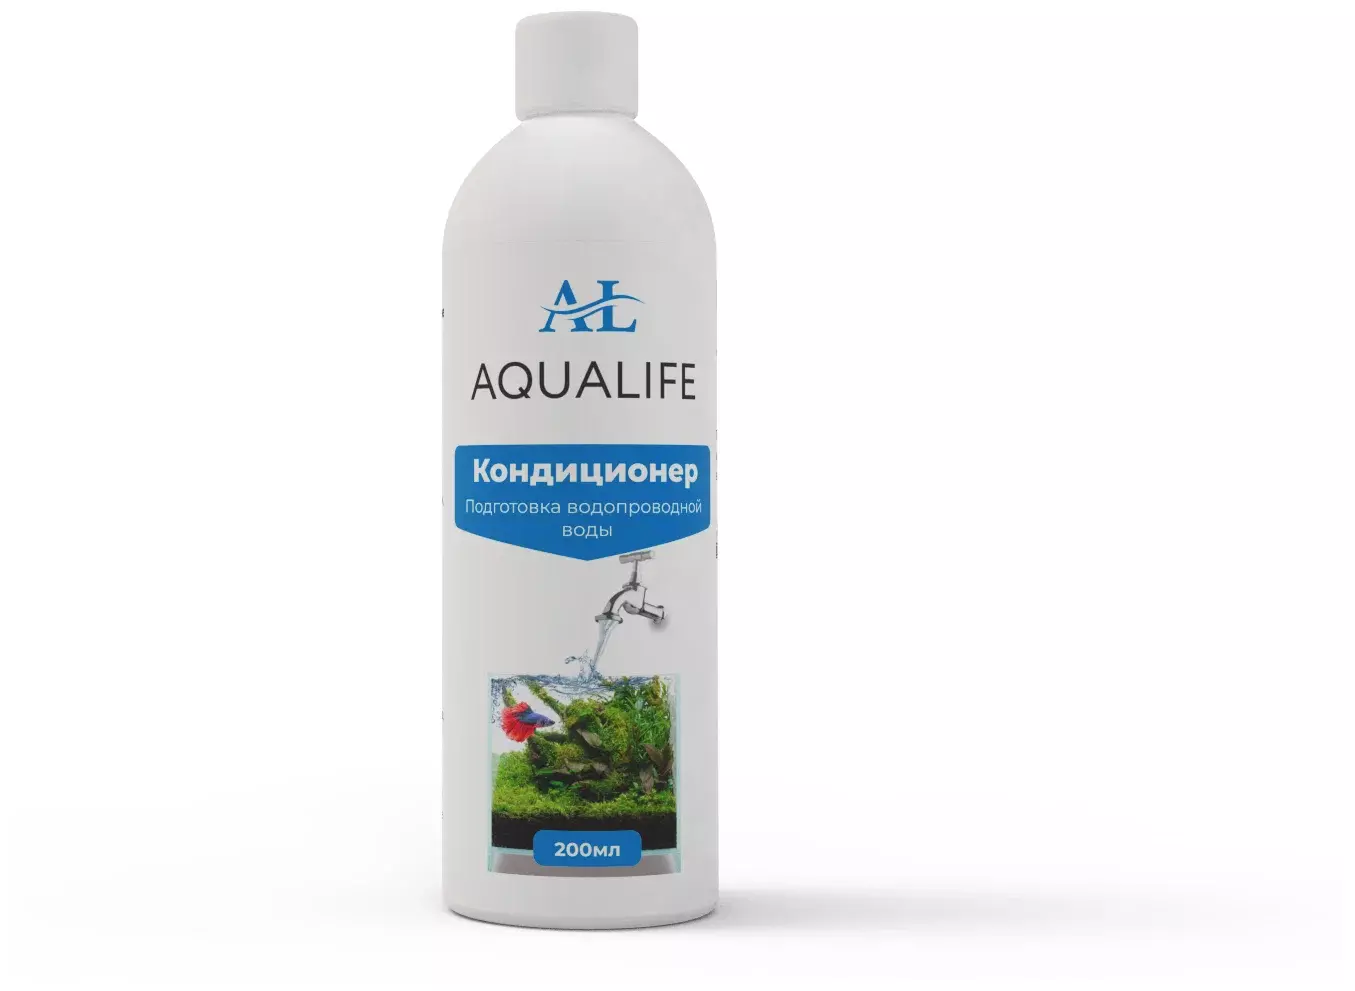 AQUALIFE Кондиционер для подготовки воды в аквариуме - купить в Сочи, цены  в Интернет-магазине